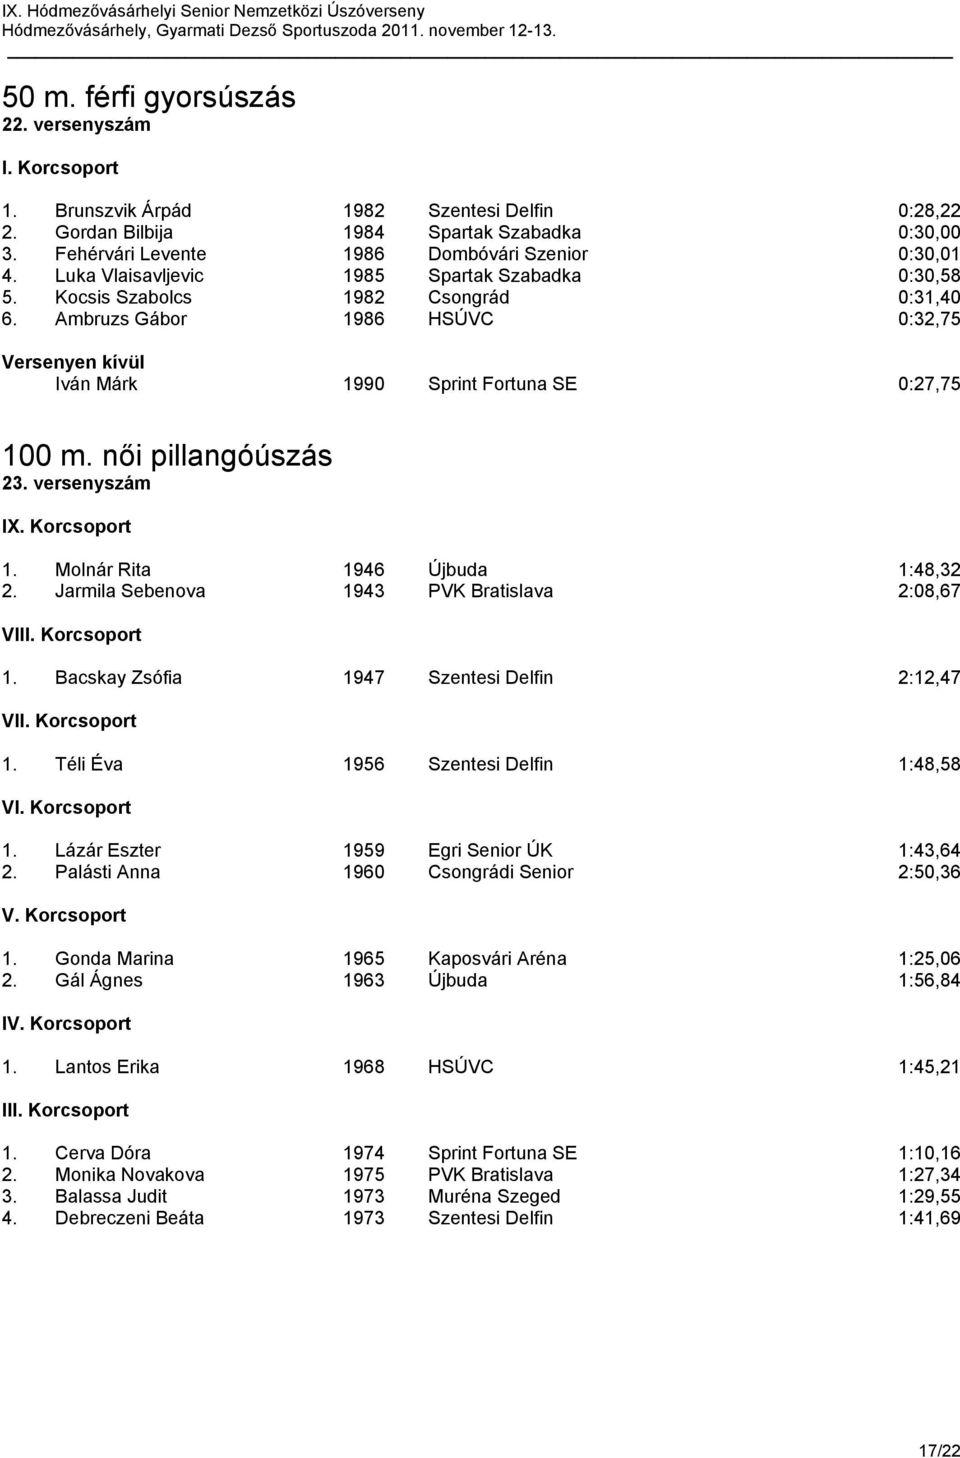 Ambruzs Gábor 1986 HSÚVC 0:32,75 Versenyen kívül Iván Márk 1990 Sprint Fortuna SE 0:27,75 100 m. női pillangóúszás 23. versenyszám IX. Korcsoport 1. Molnár Rita 1946 Újbuda 1:48,32 2.